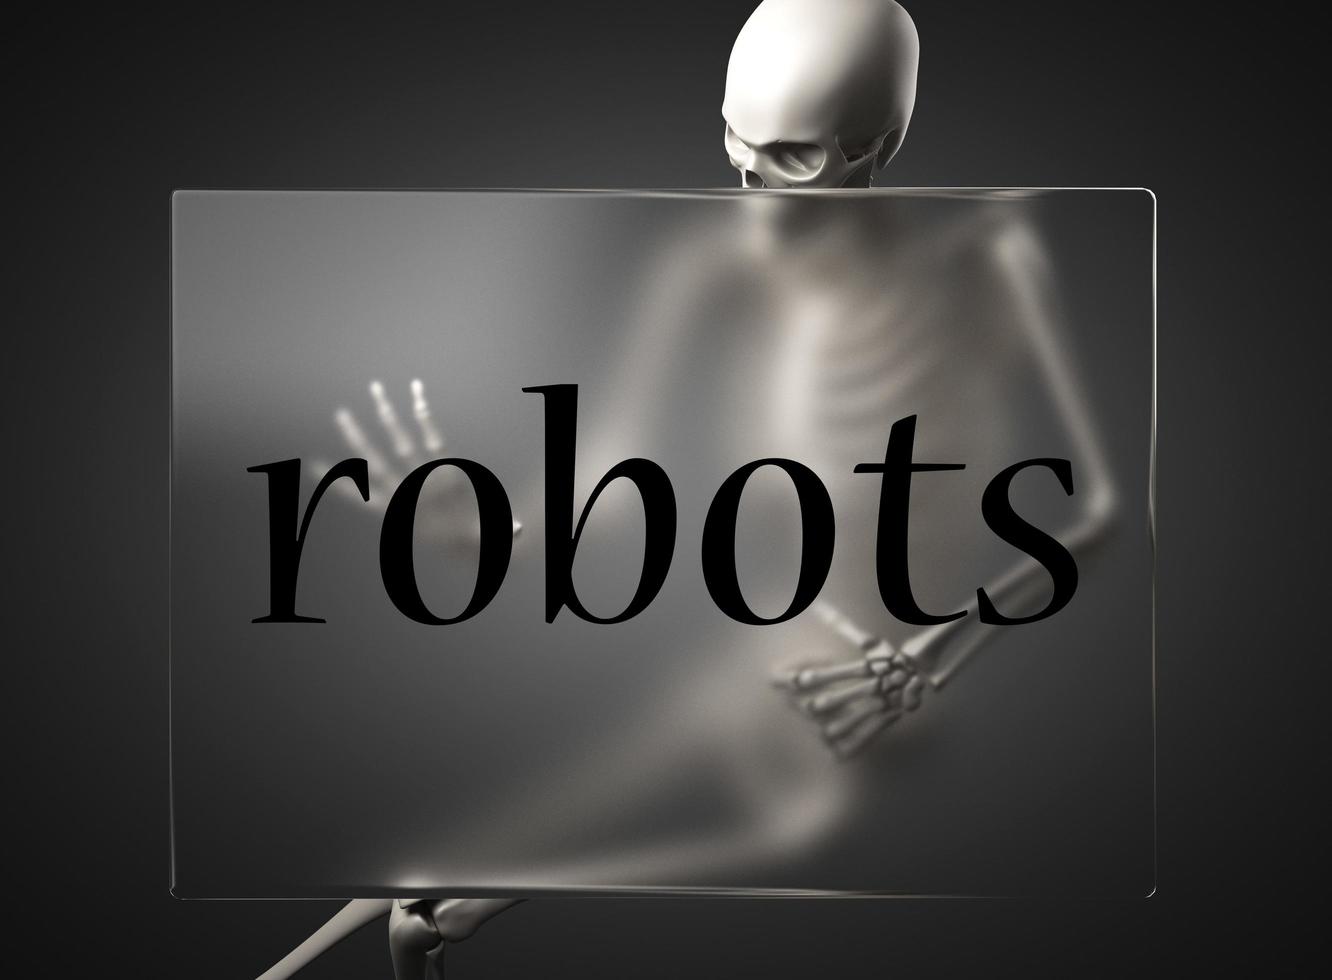 palabra de robots sobre vidrio y esqueleto foto